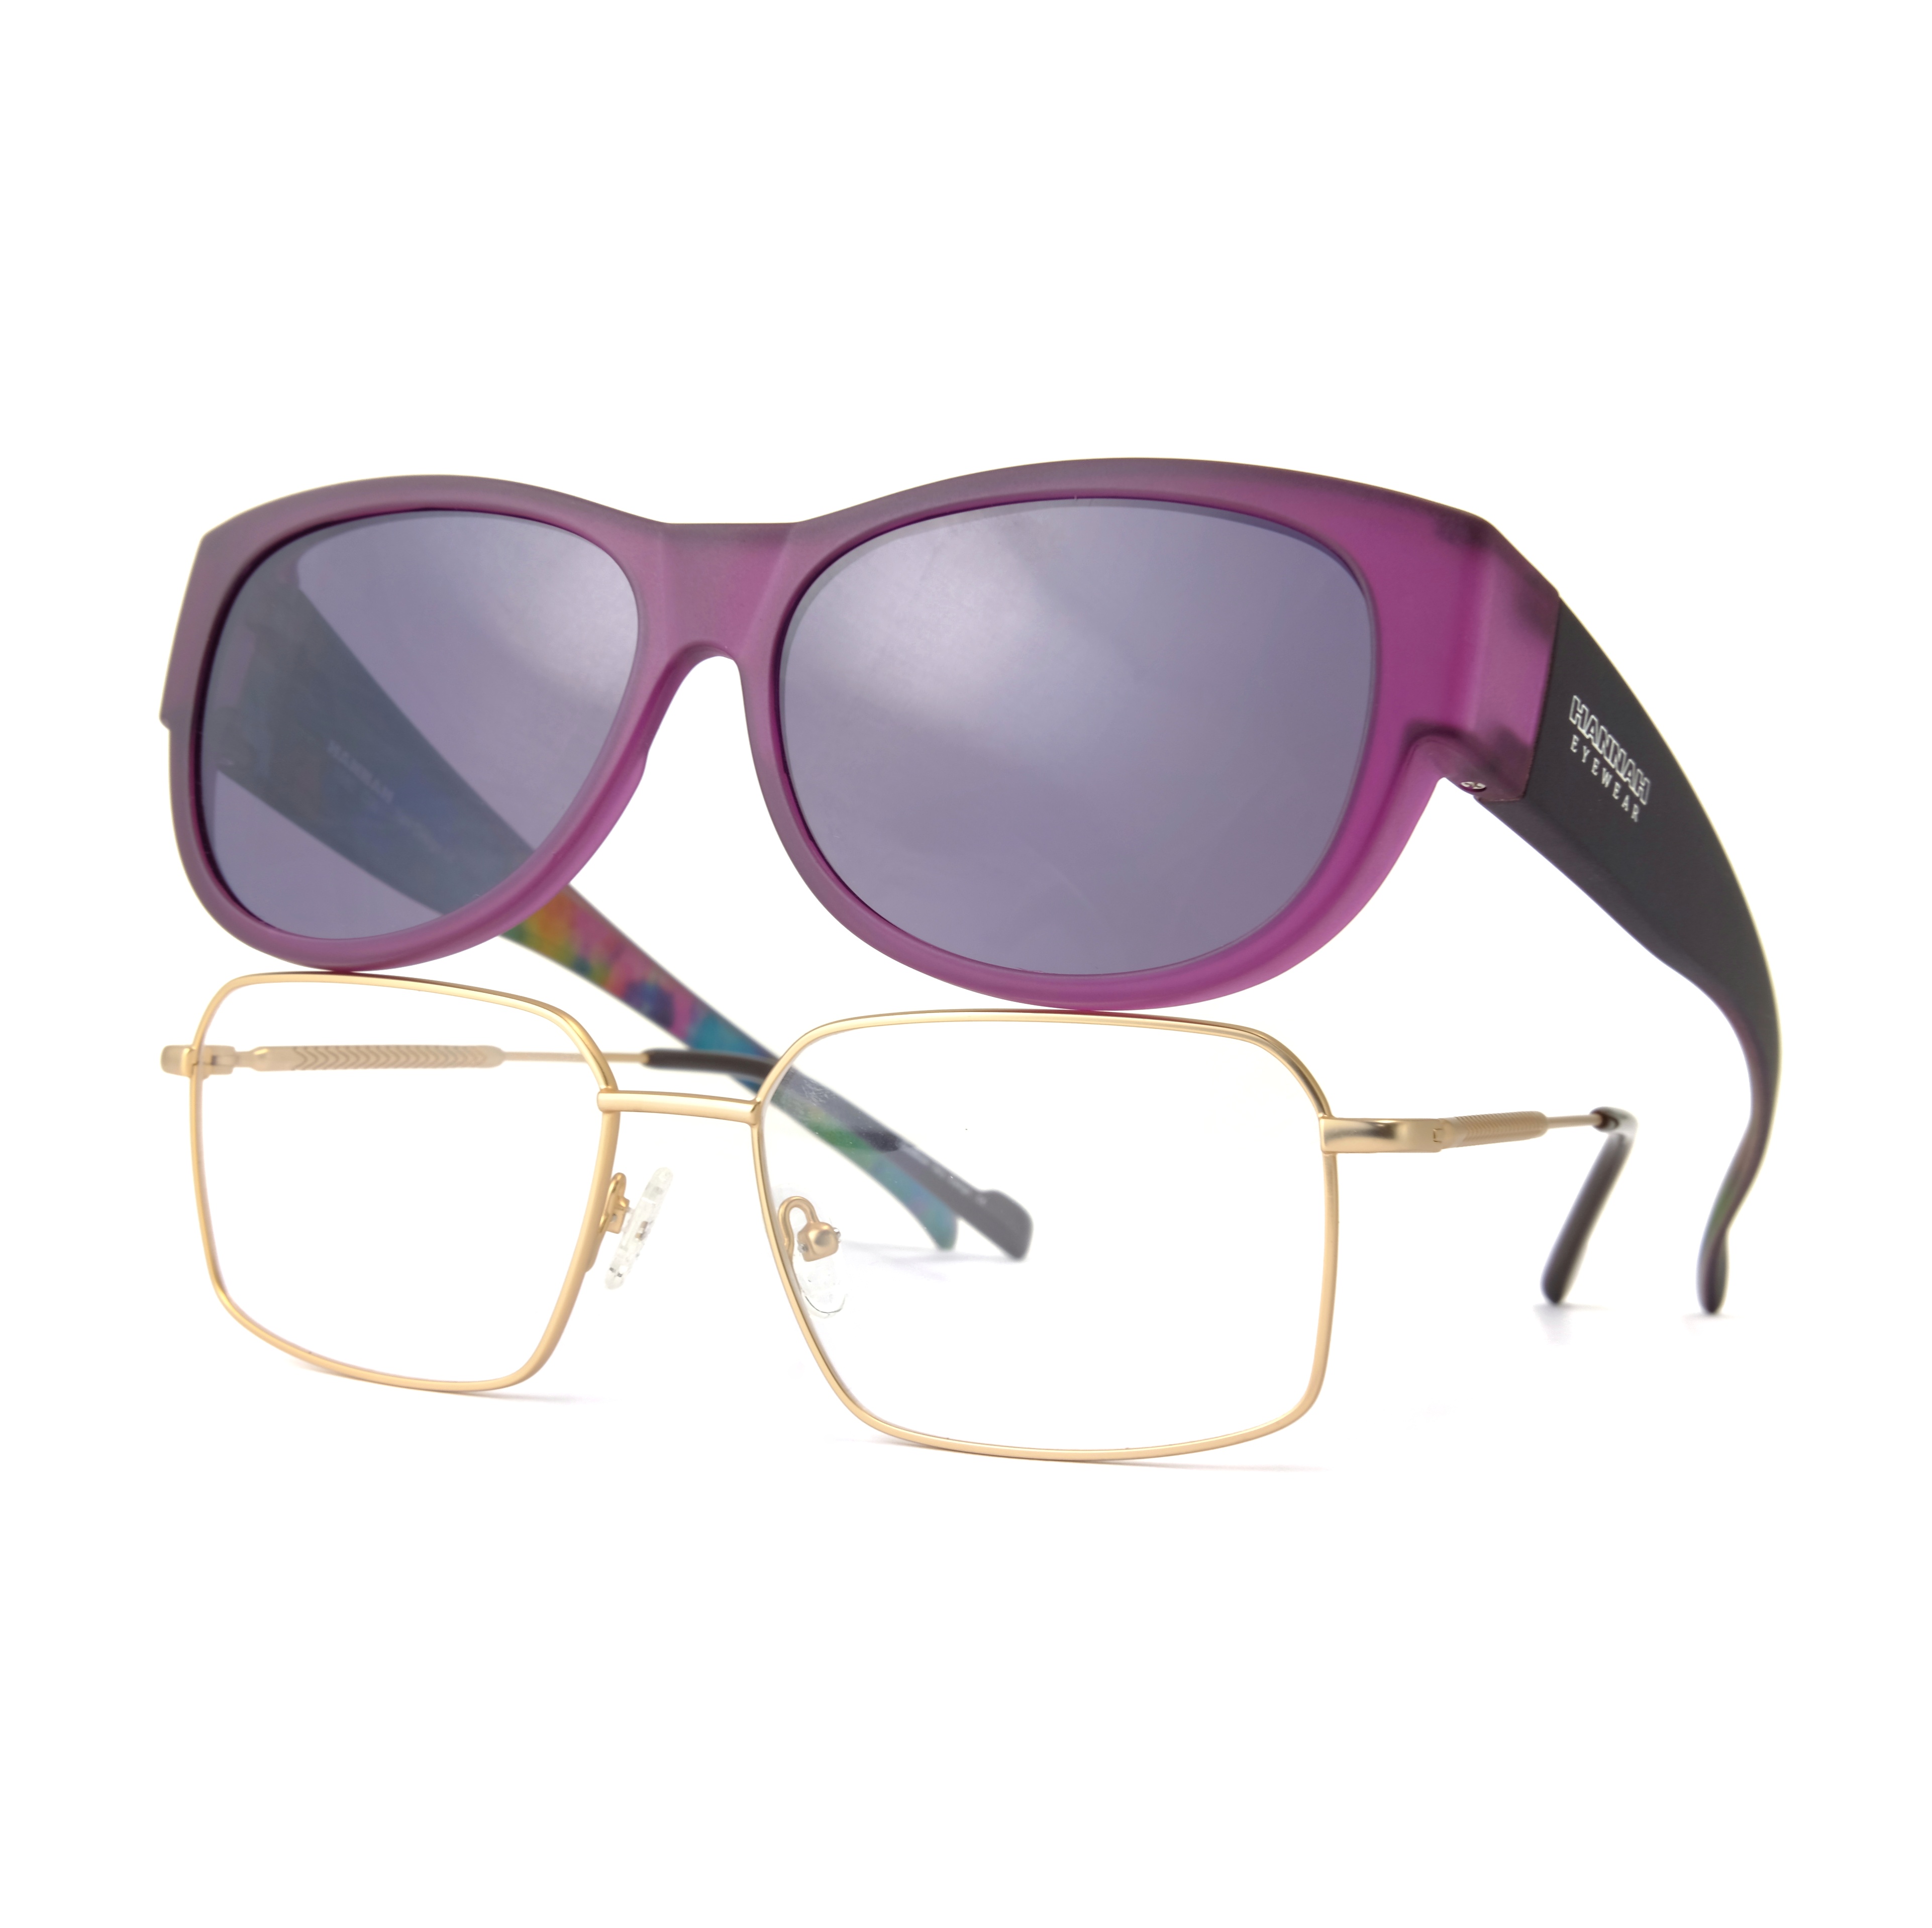 Gafas de sol naranjas Fitover River para mujer, montura de gafas, gafas polarizadas de gran tamaño, personalizadas